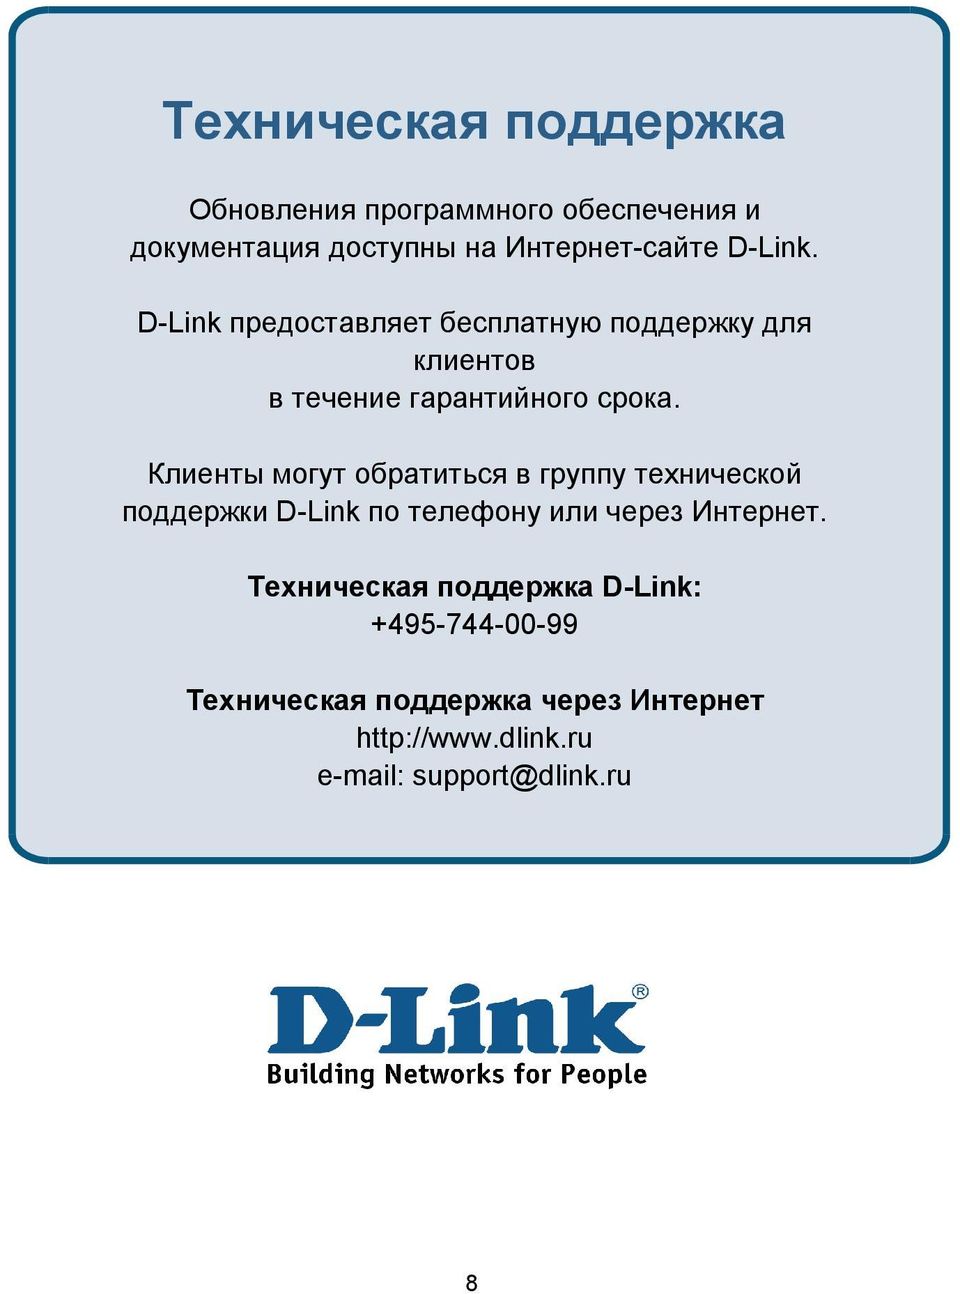 Клиенты могут обратиться в группу технической поддержки D-Link по телефону или через Интернет.